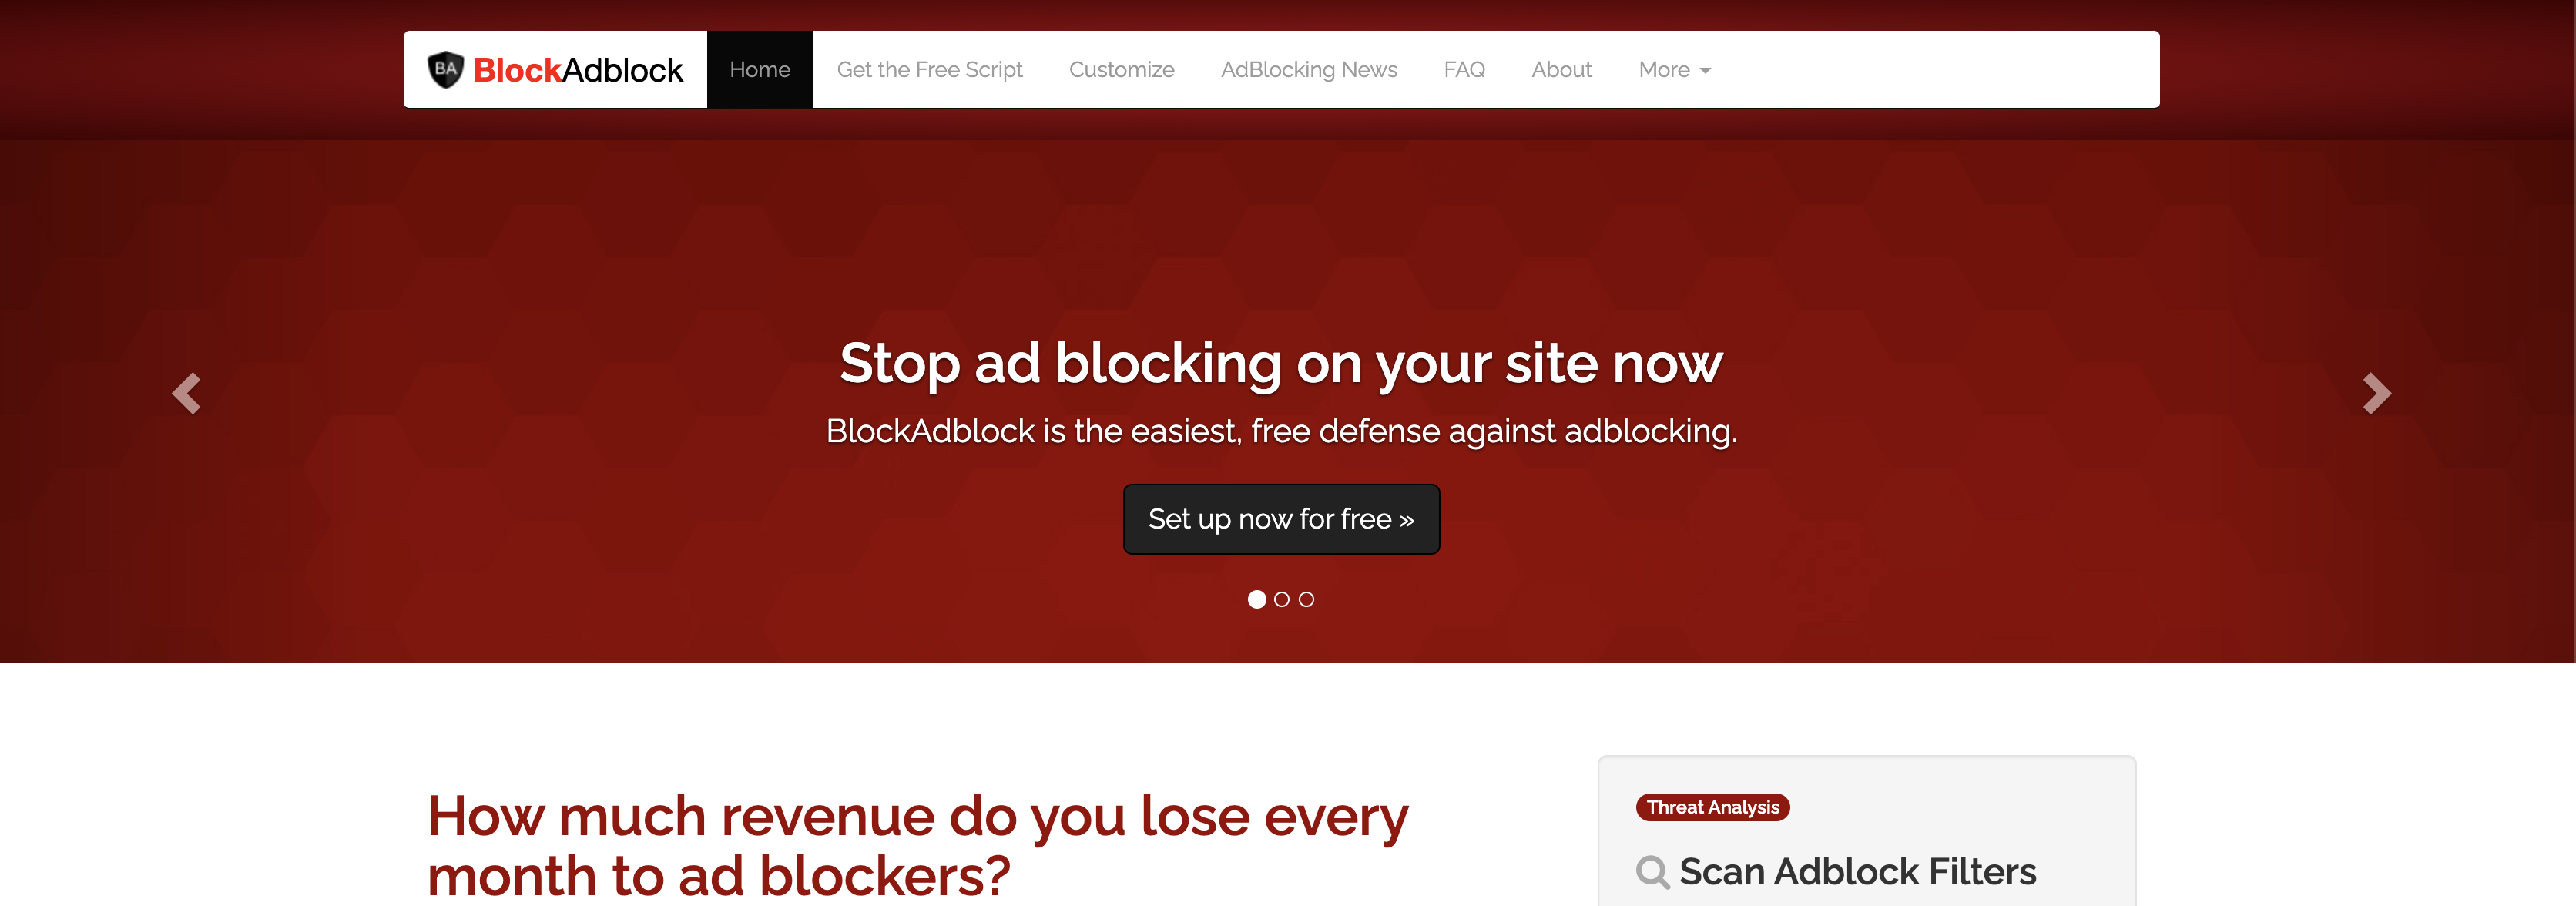 blockadbloc 메인 화면